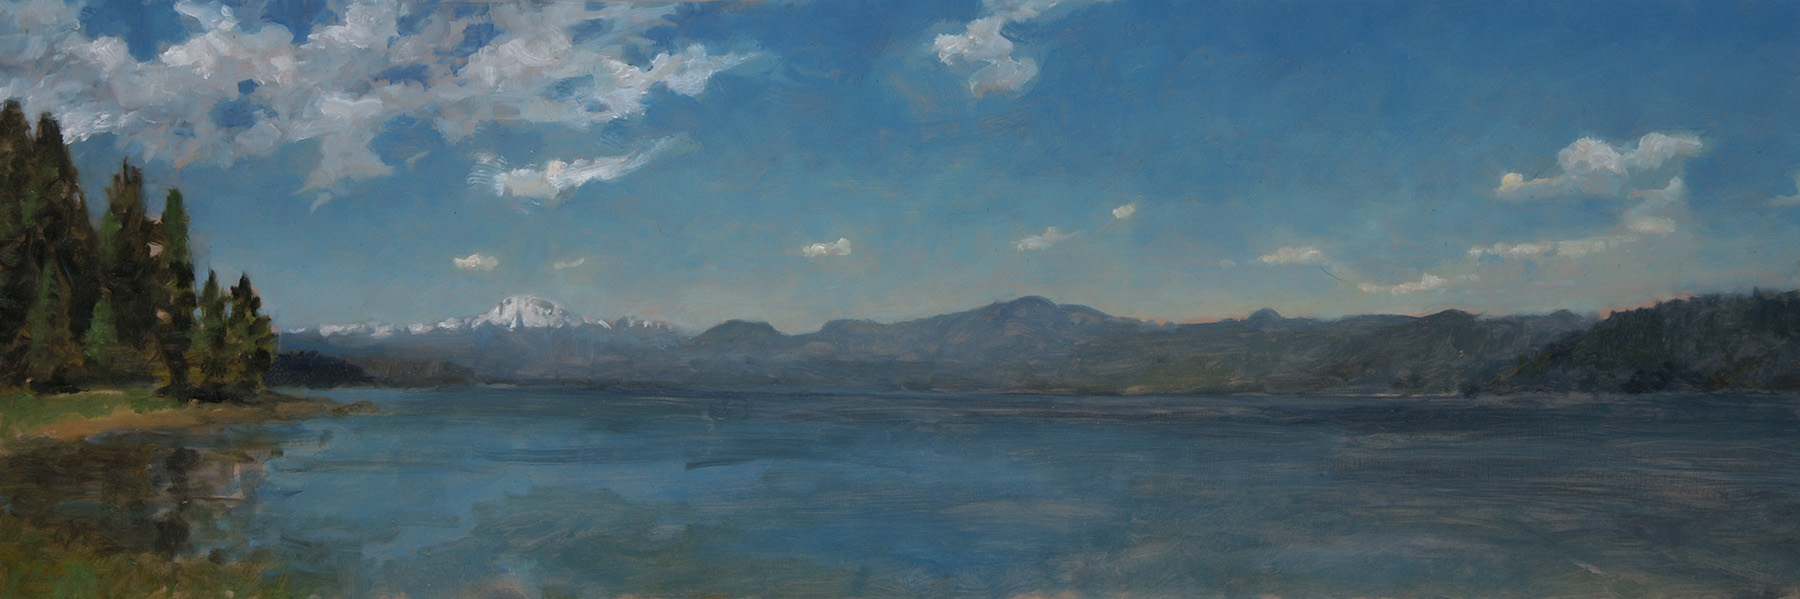 Lake Almanor “Mt. Lassen” Panorama